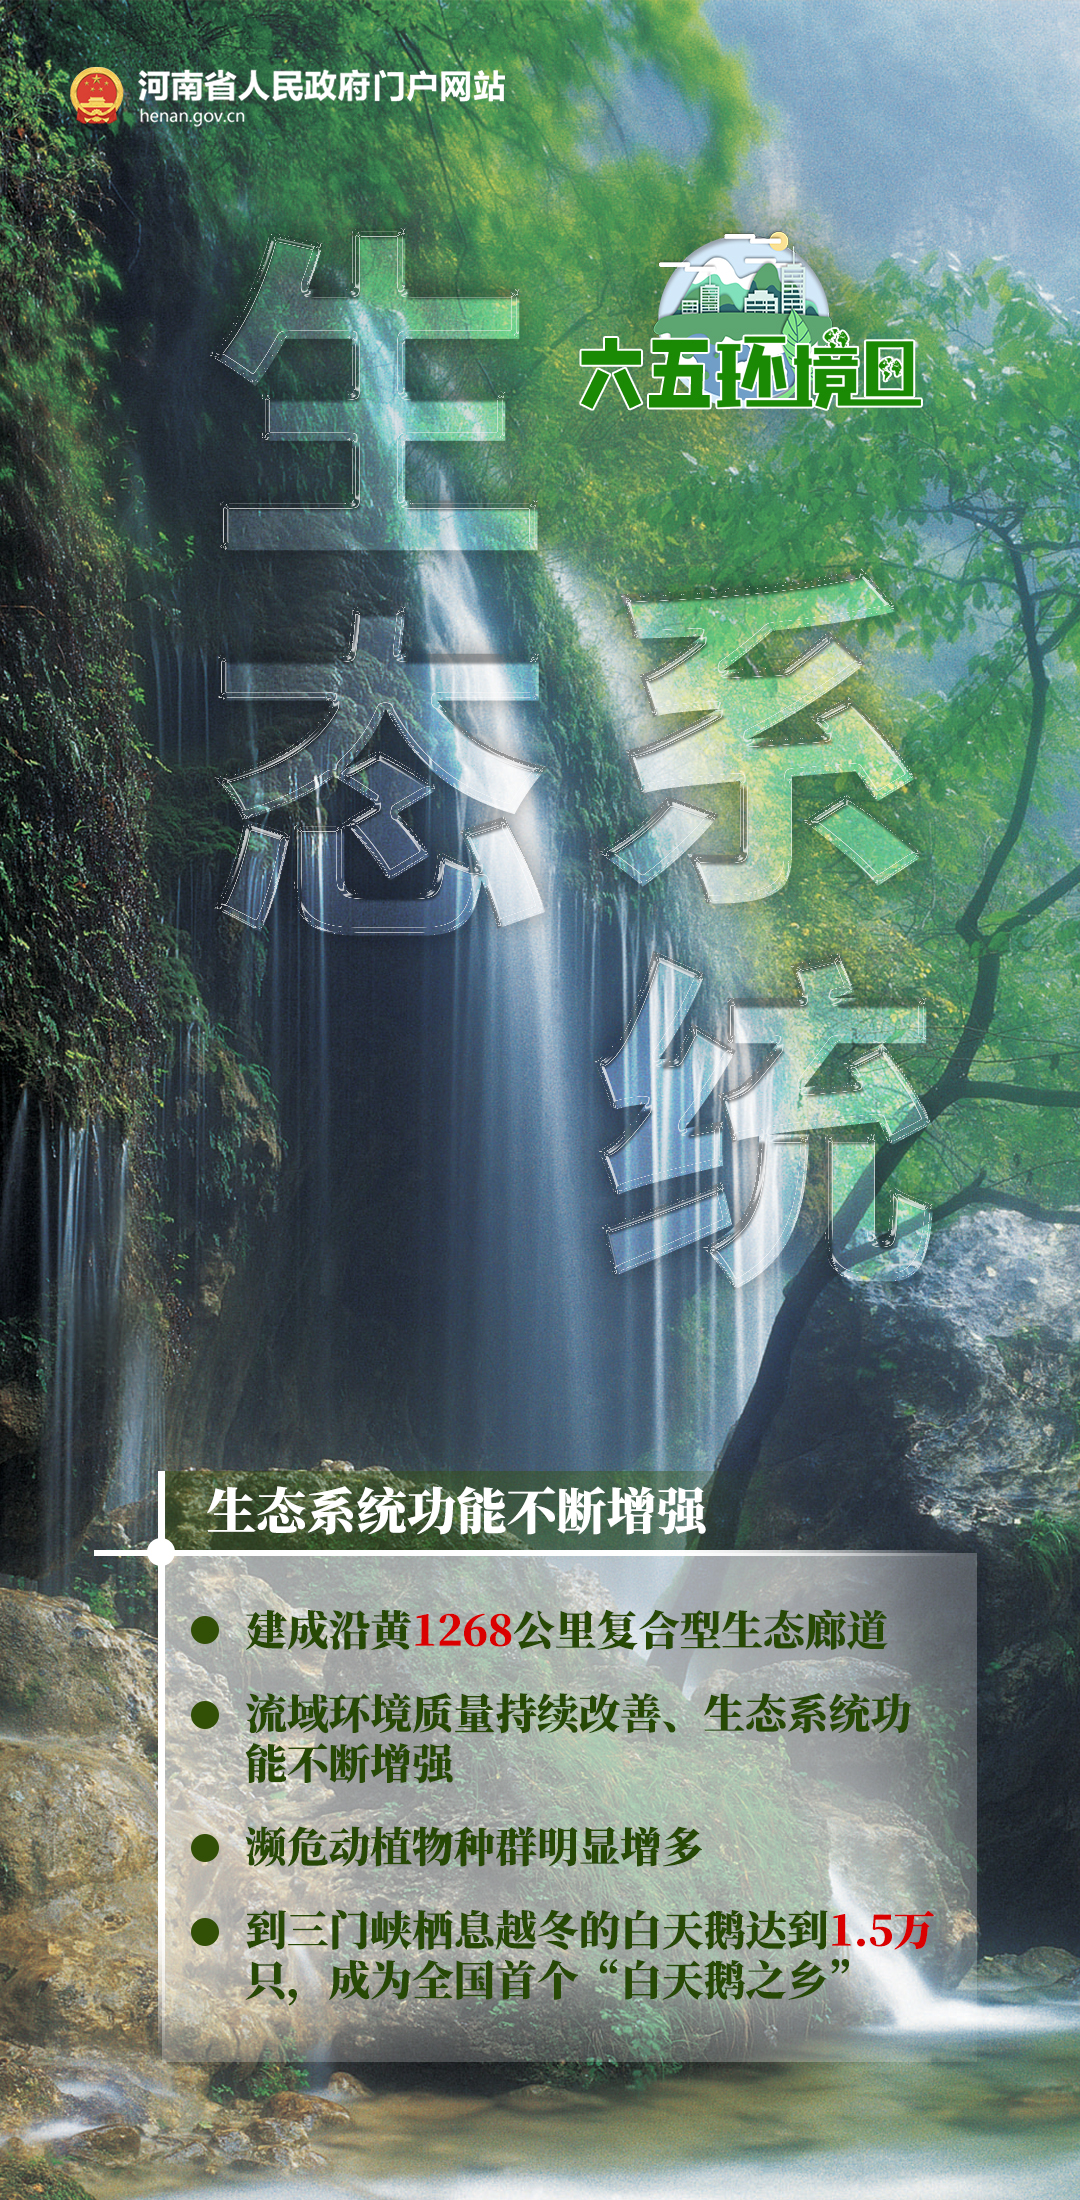 海报丨与你有关！一起来看河南省2022年度环保“成绩单”